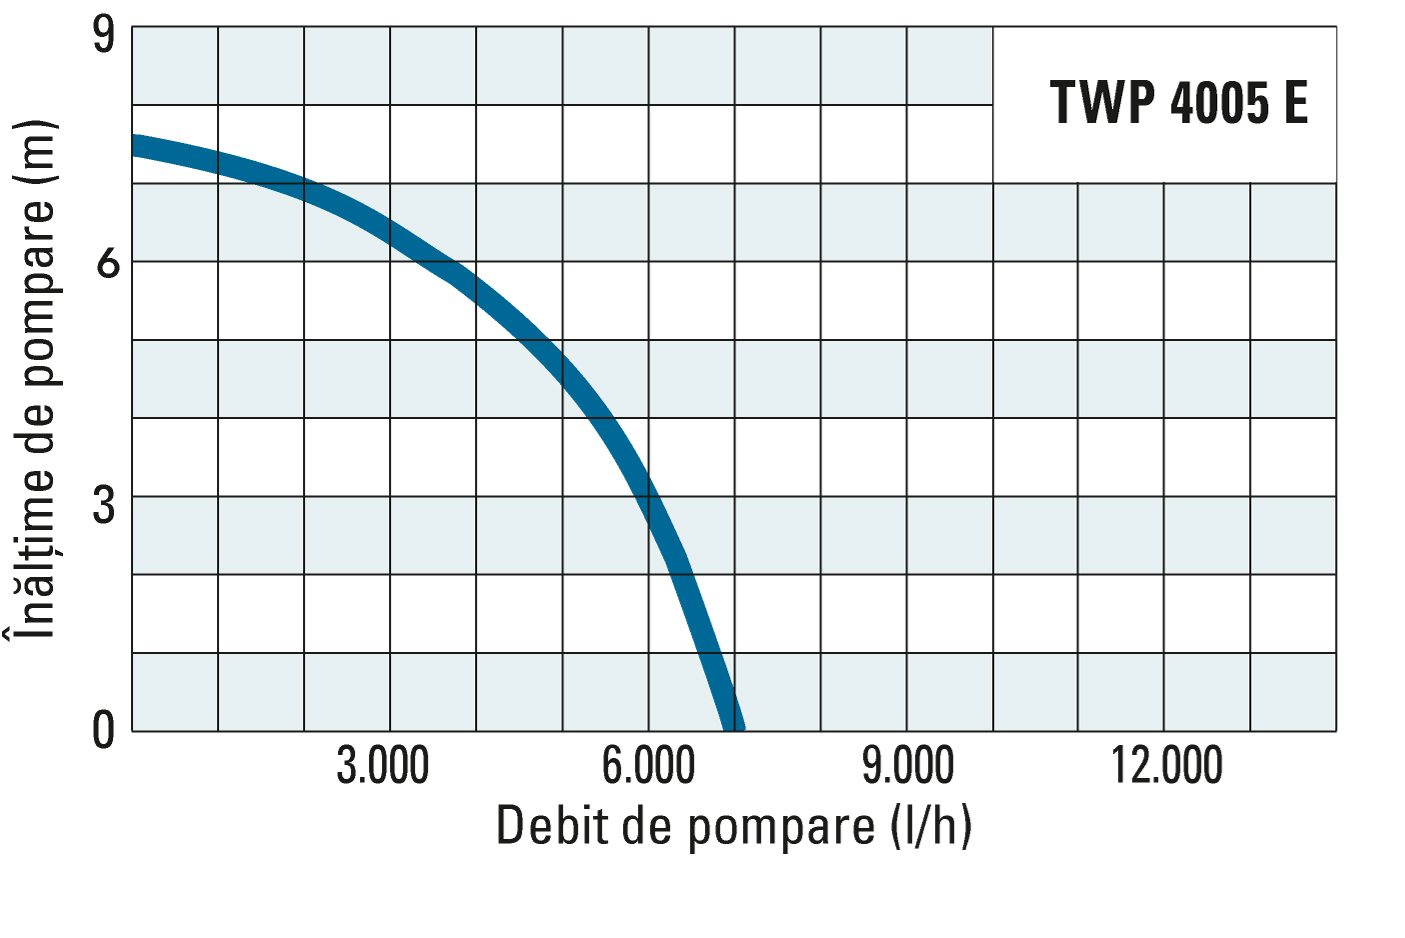 Înălţimea de pompare şi debitul de pompare al unităţii TWP 4005 E